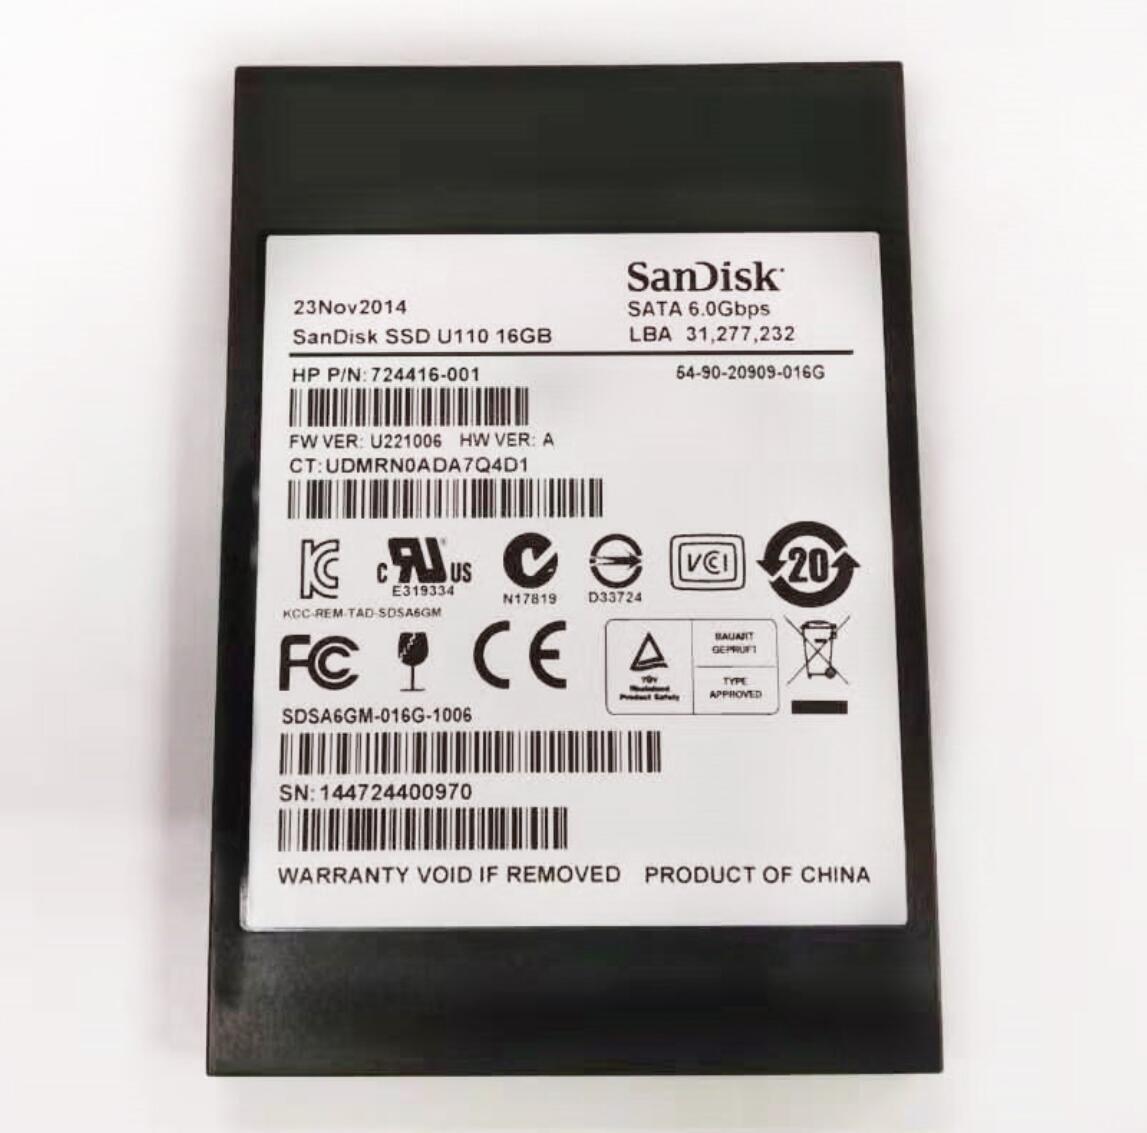 SanDisk U110 Sdsa6gm-16g-1006 2.5" SATA III Solid State for online | eBay